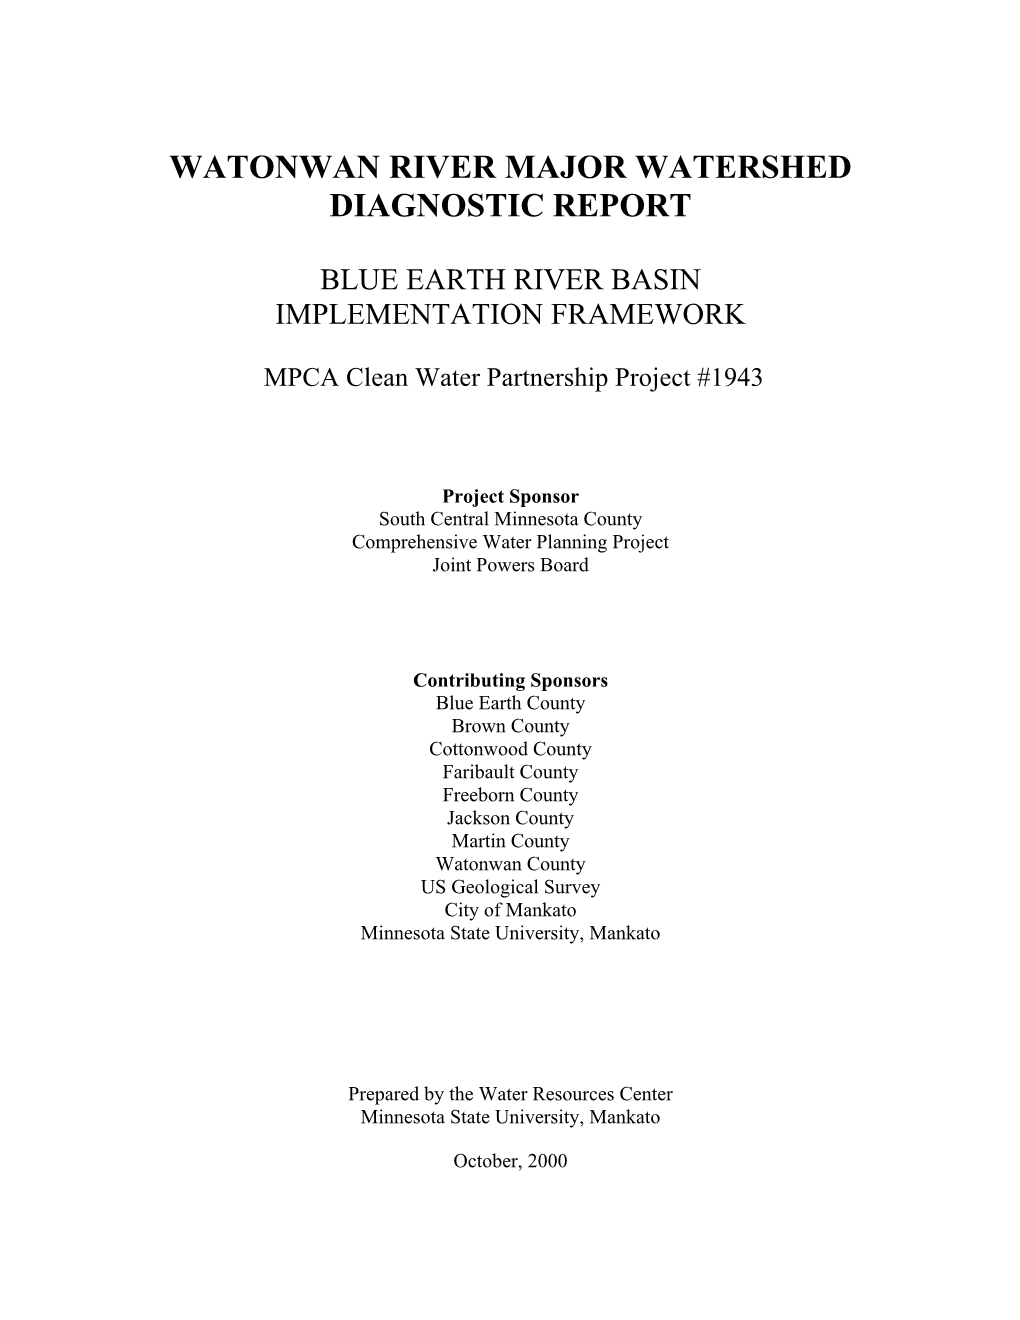 Watonwan River Major Watershed Diagnostic Report